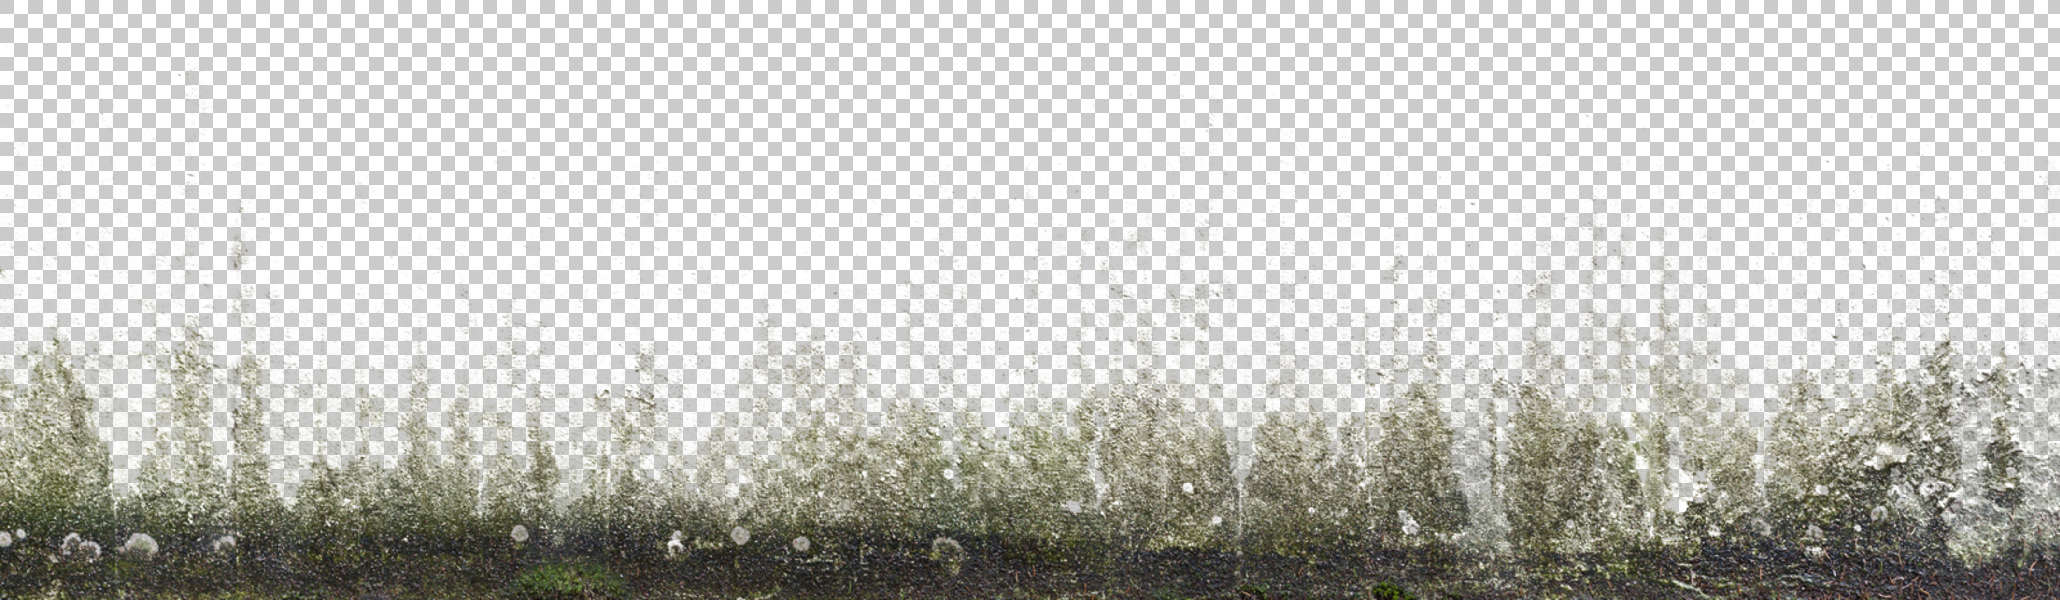 DecalBottom0008 - Free Background Texture - decal masked grunge